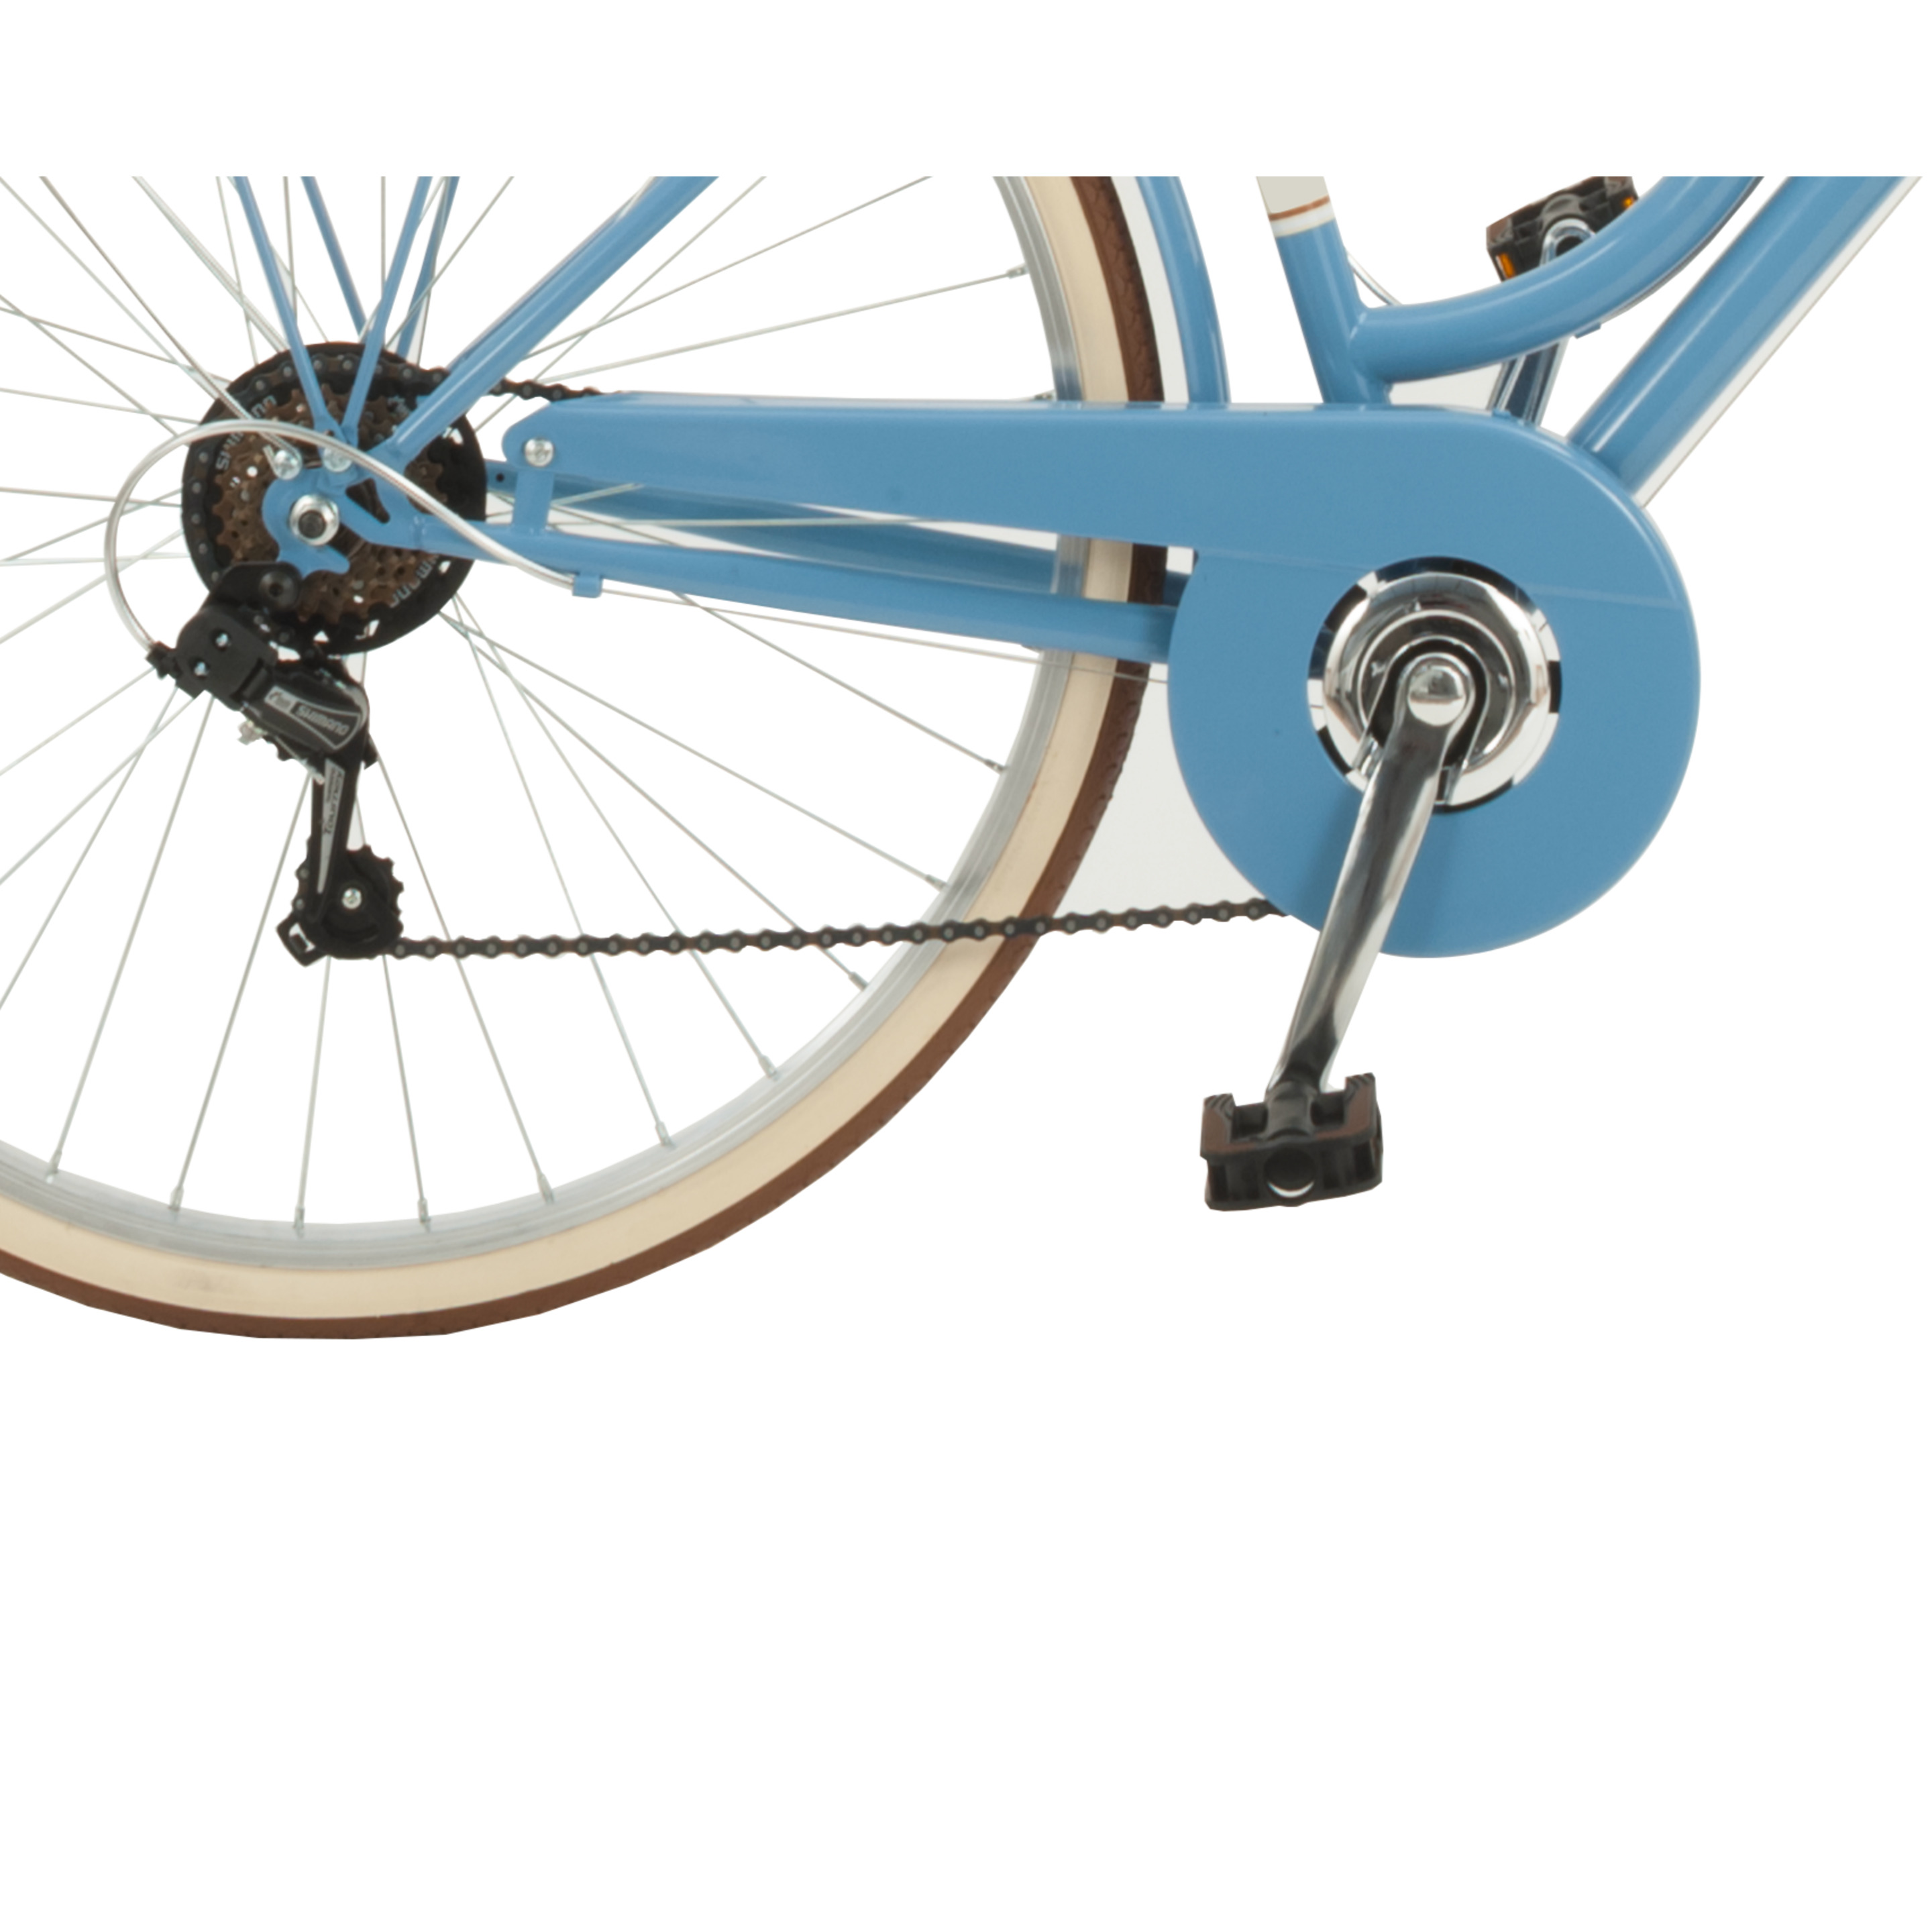 Bicicleta De Ciudad Airbici 619l Malagueta - Azul Cielo - Vintage, paseo, ciudad  MKP